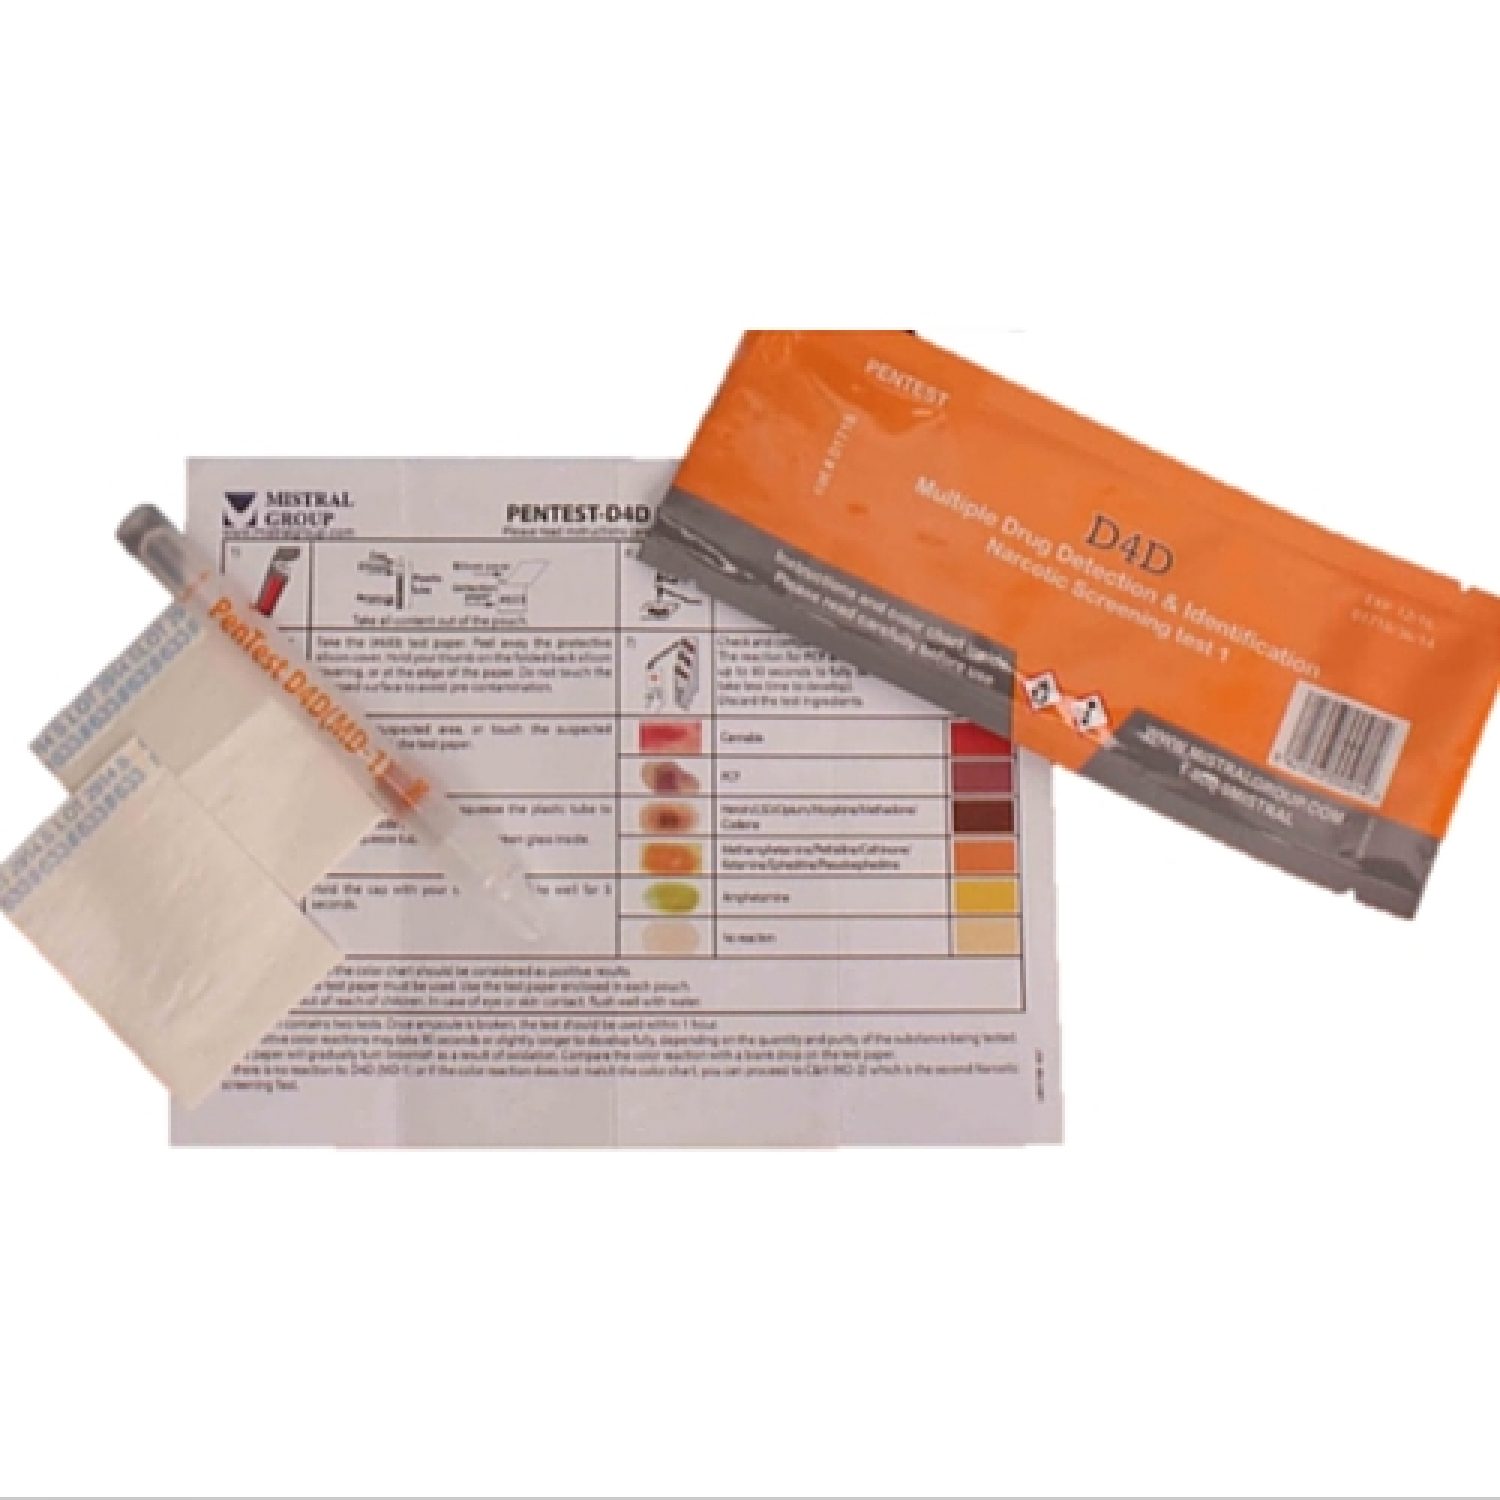 D4D PenTest multi-drug test kit (each)